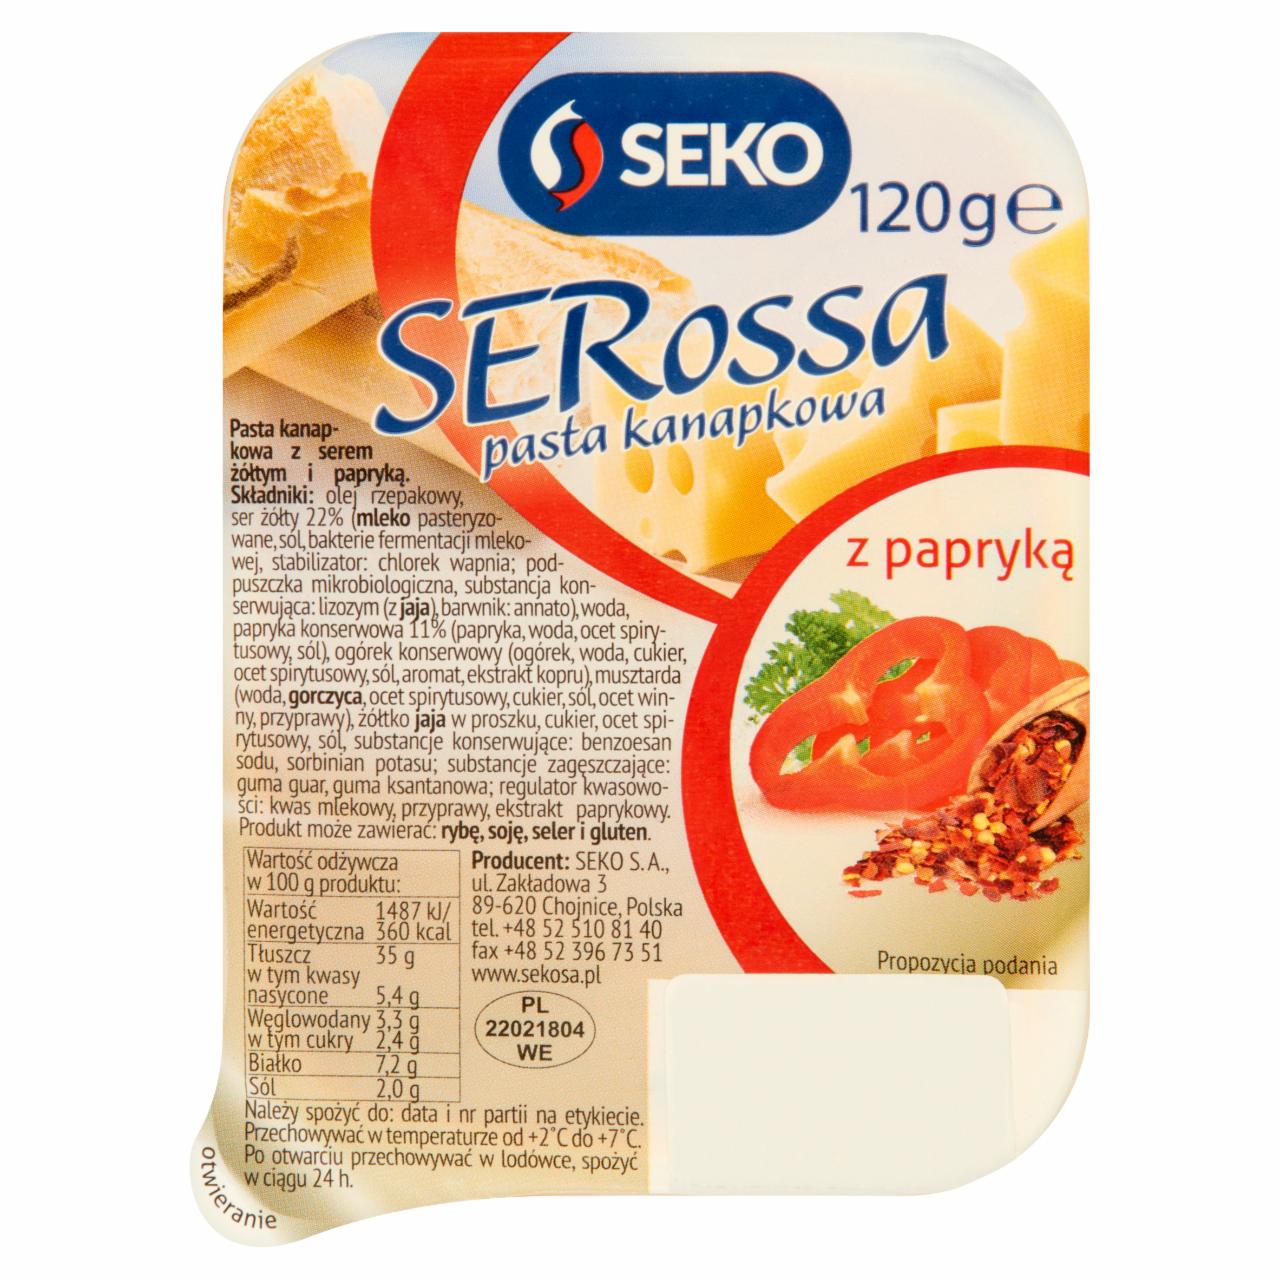 Zdjęcia - Seko Serossa Pasta kanapkowa z papryką 120 g